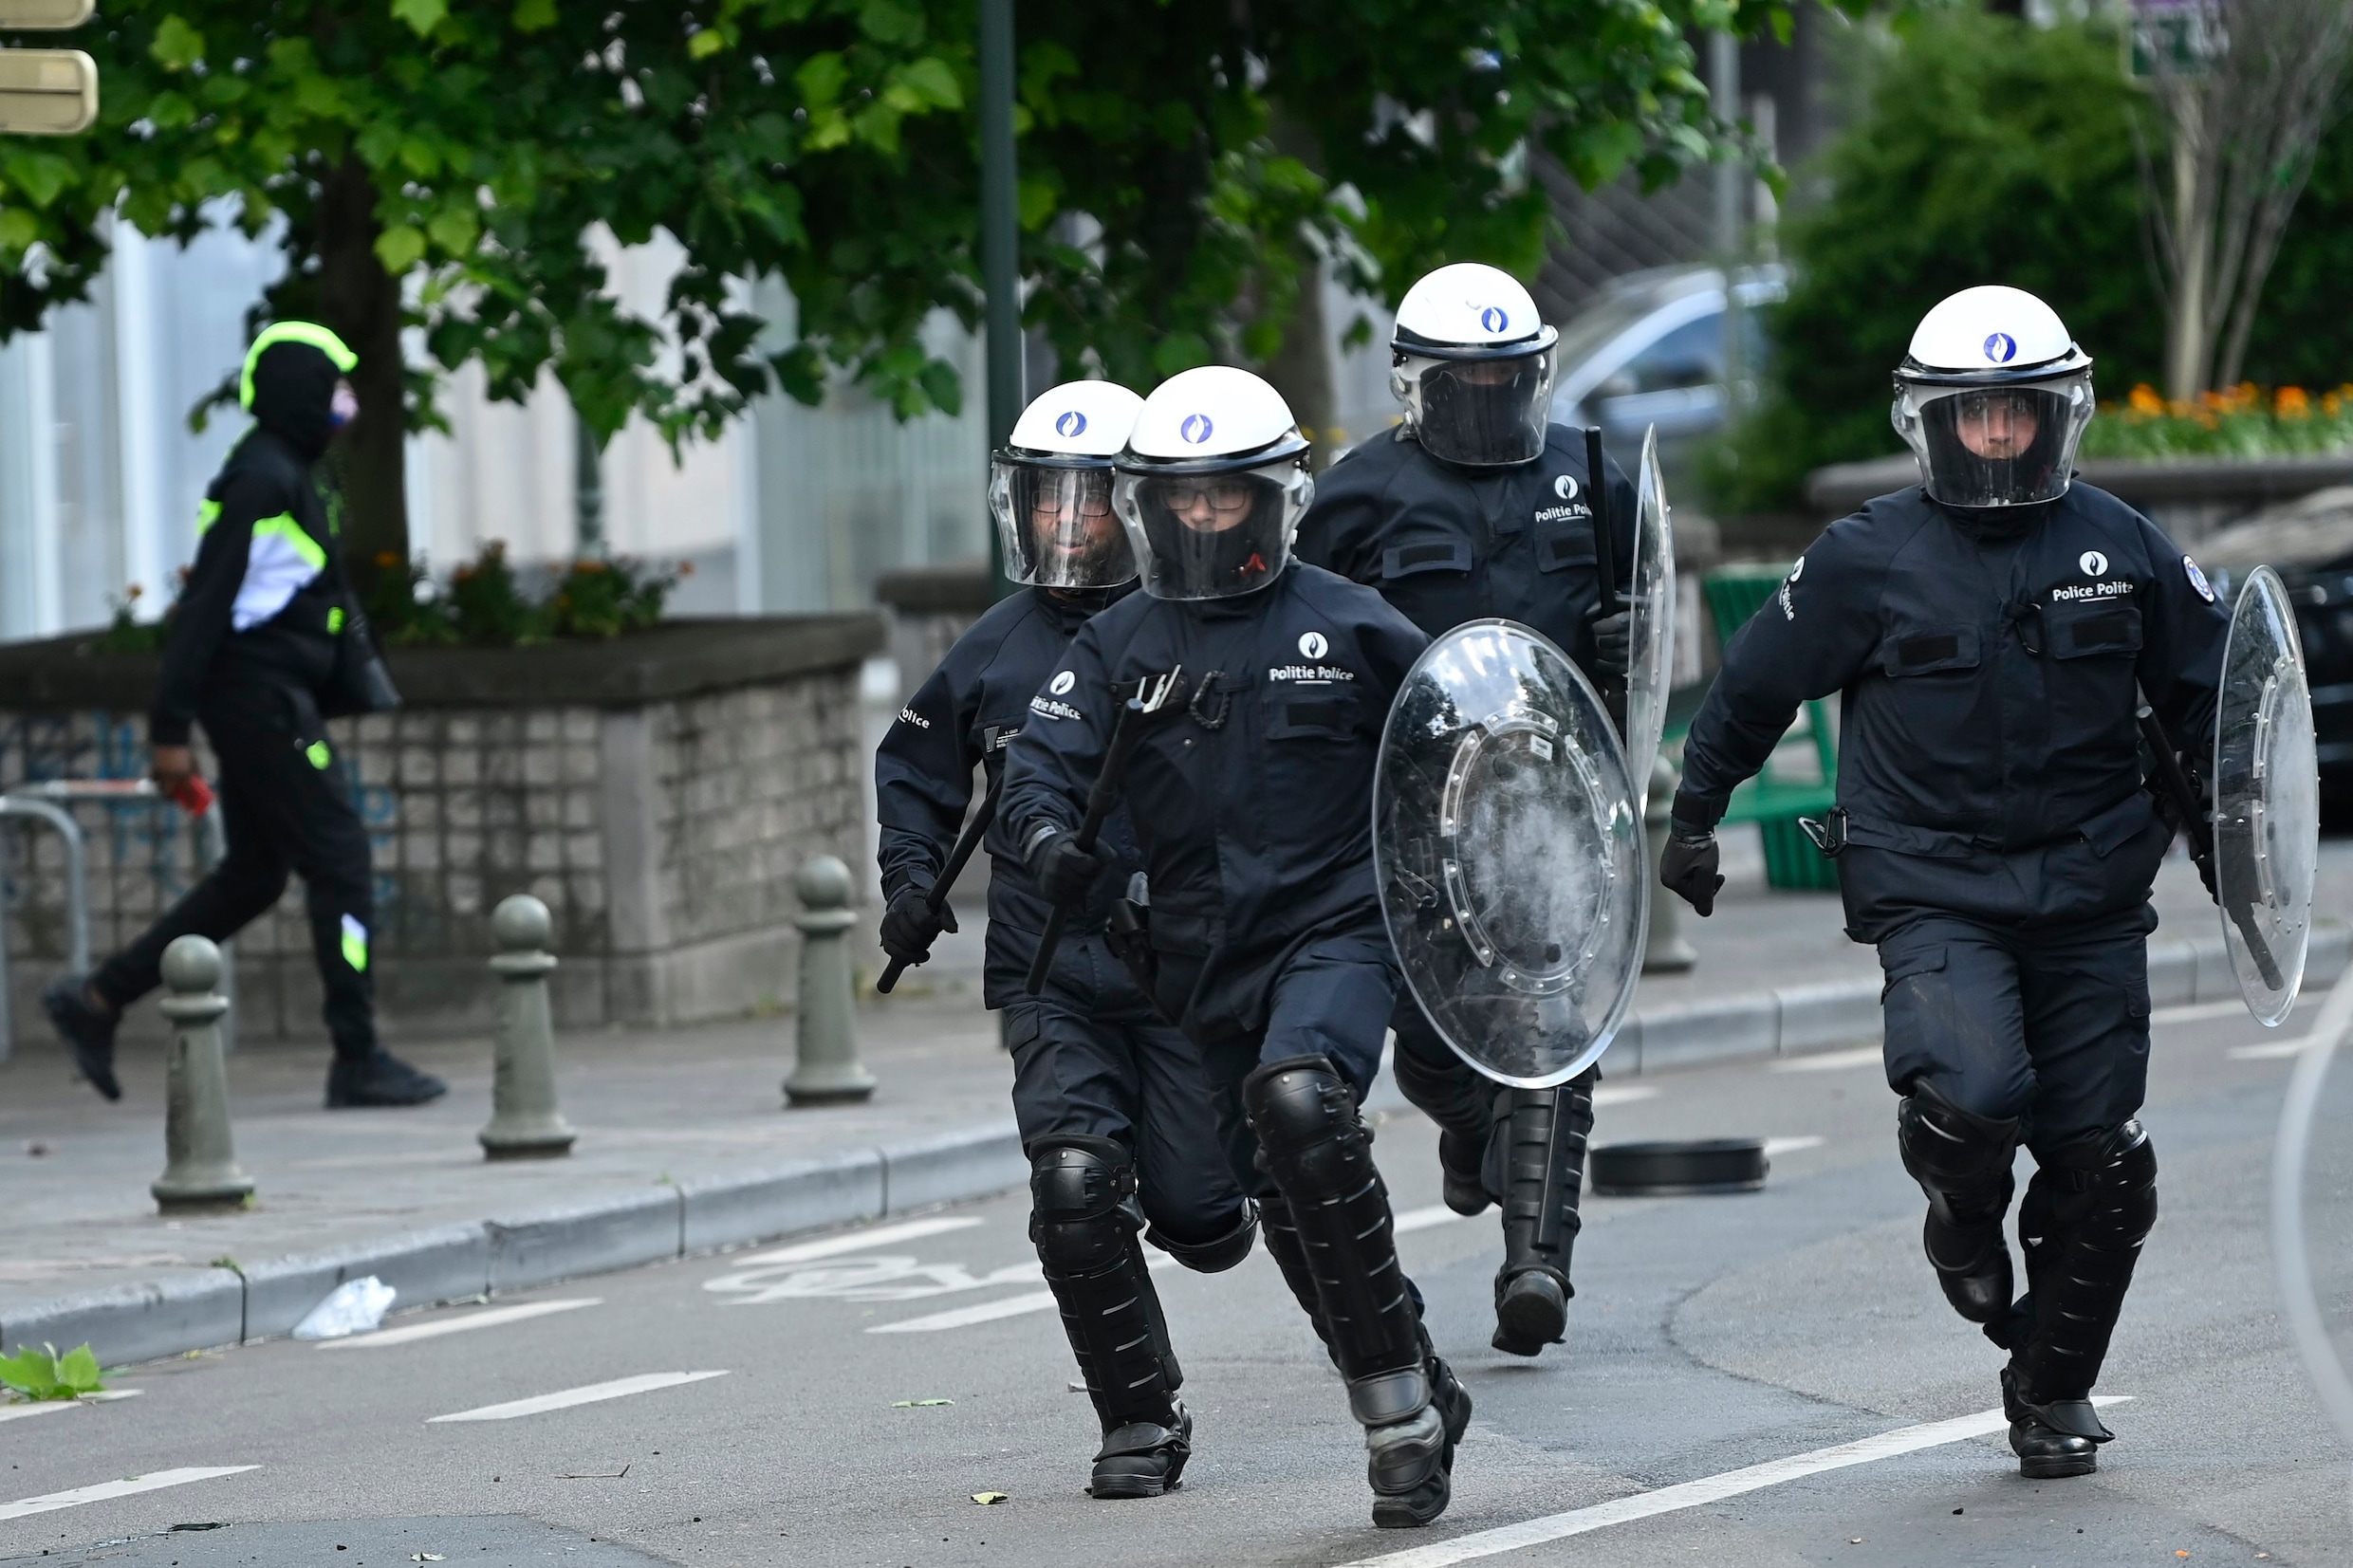 ‘28 agenten gewond’: vakbond eist nultolerantie tegen politiegeweld en dient stakingsaanzegging in